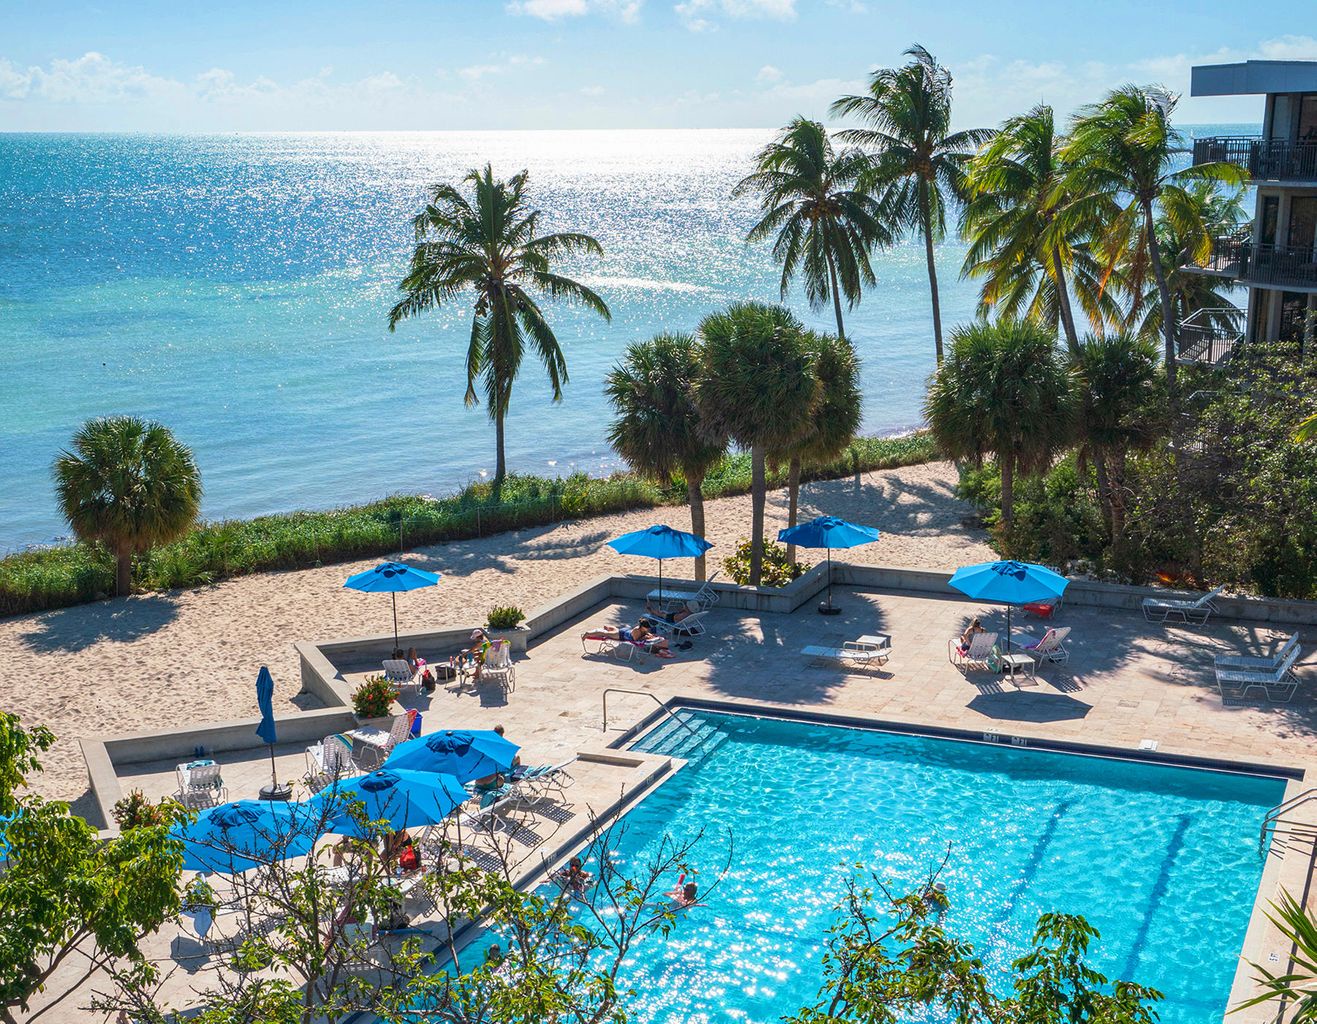 Balcony Pool View Key West's Crown Jewel